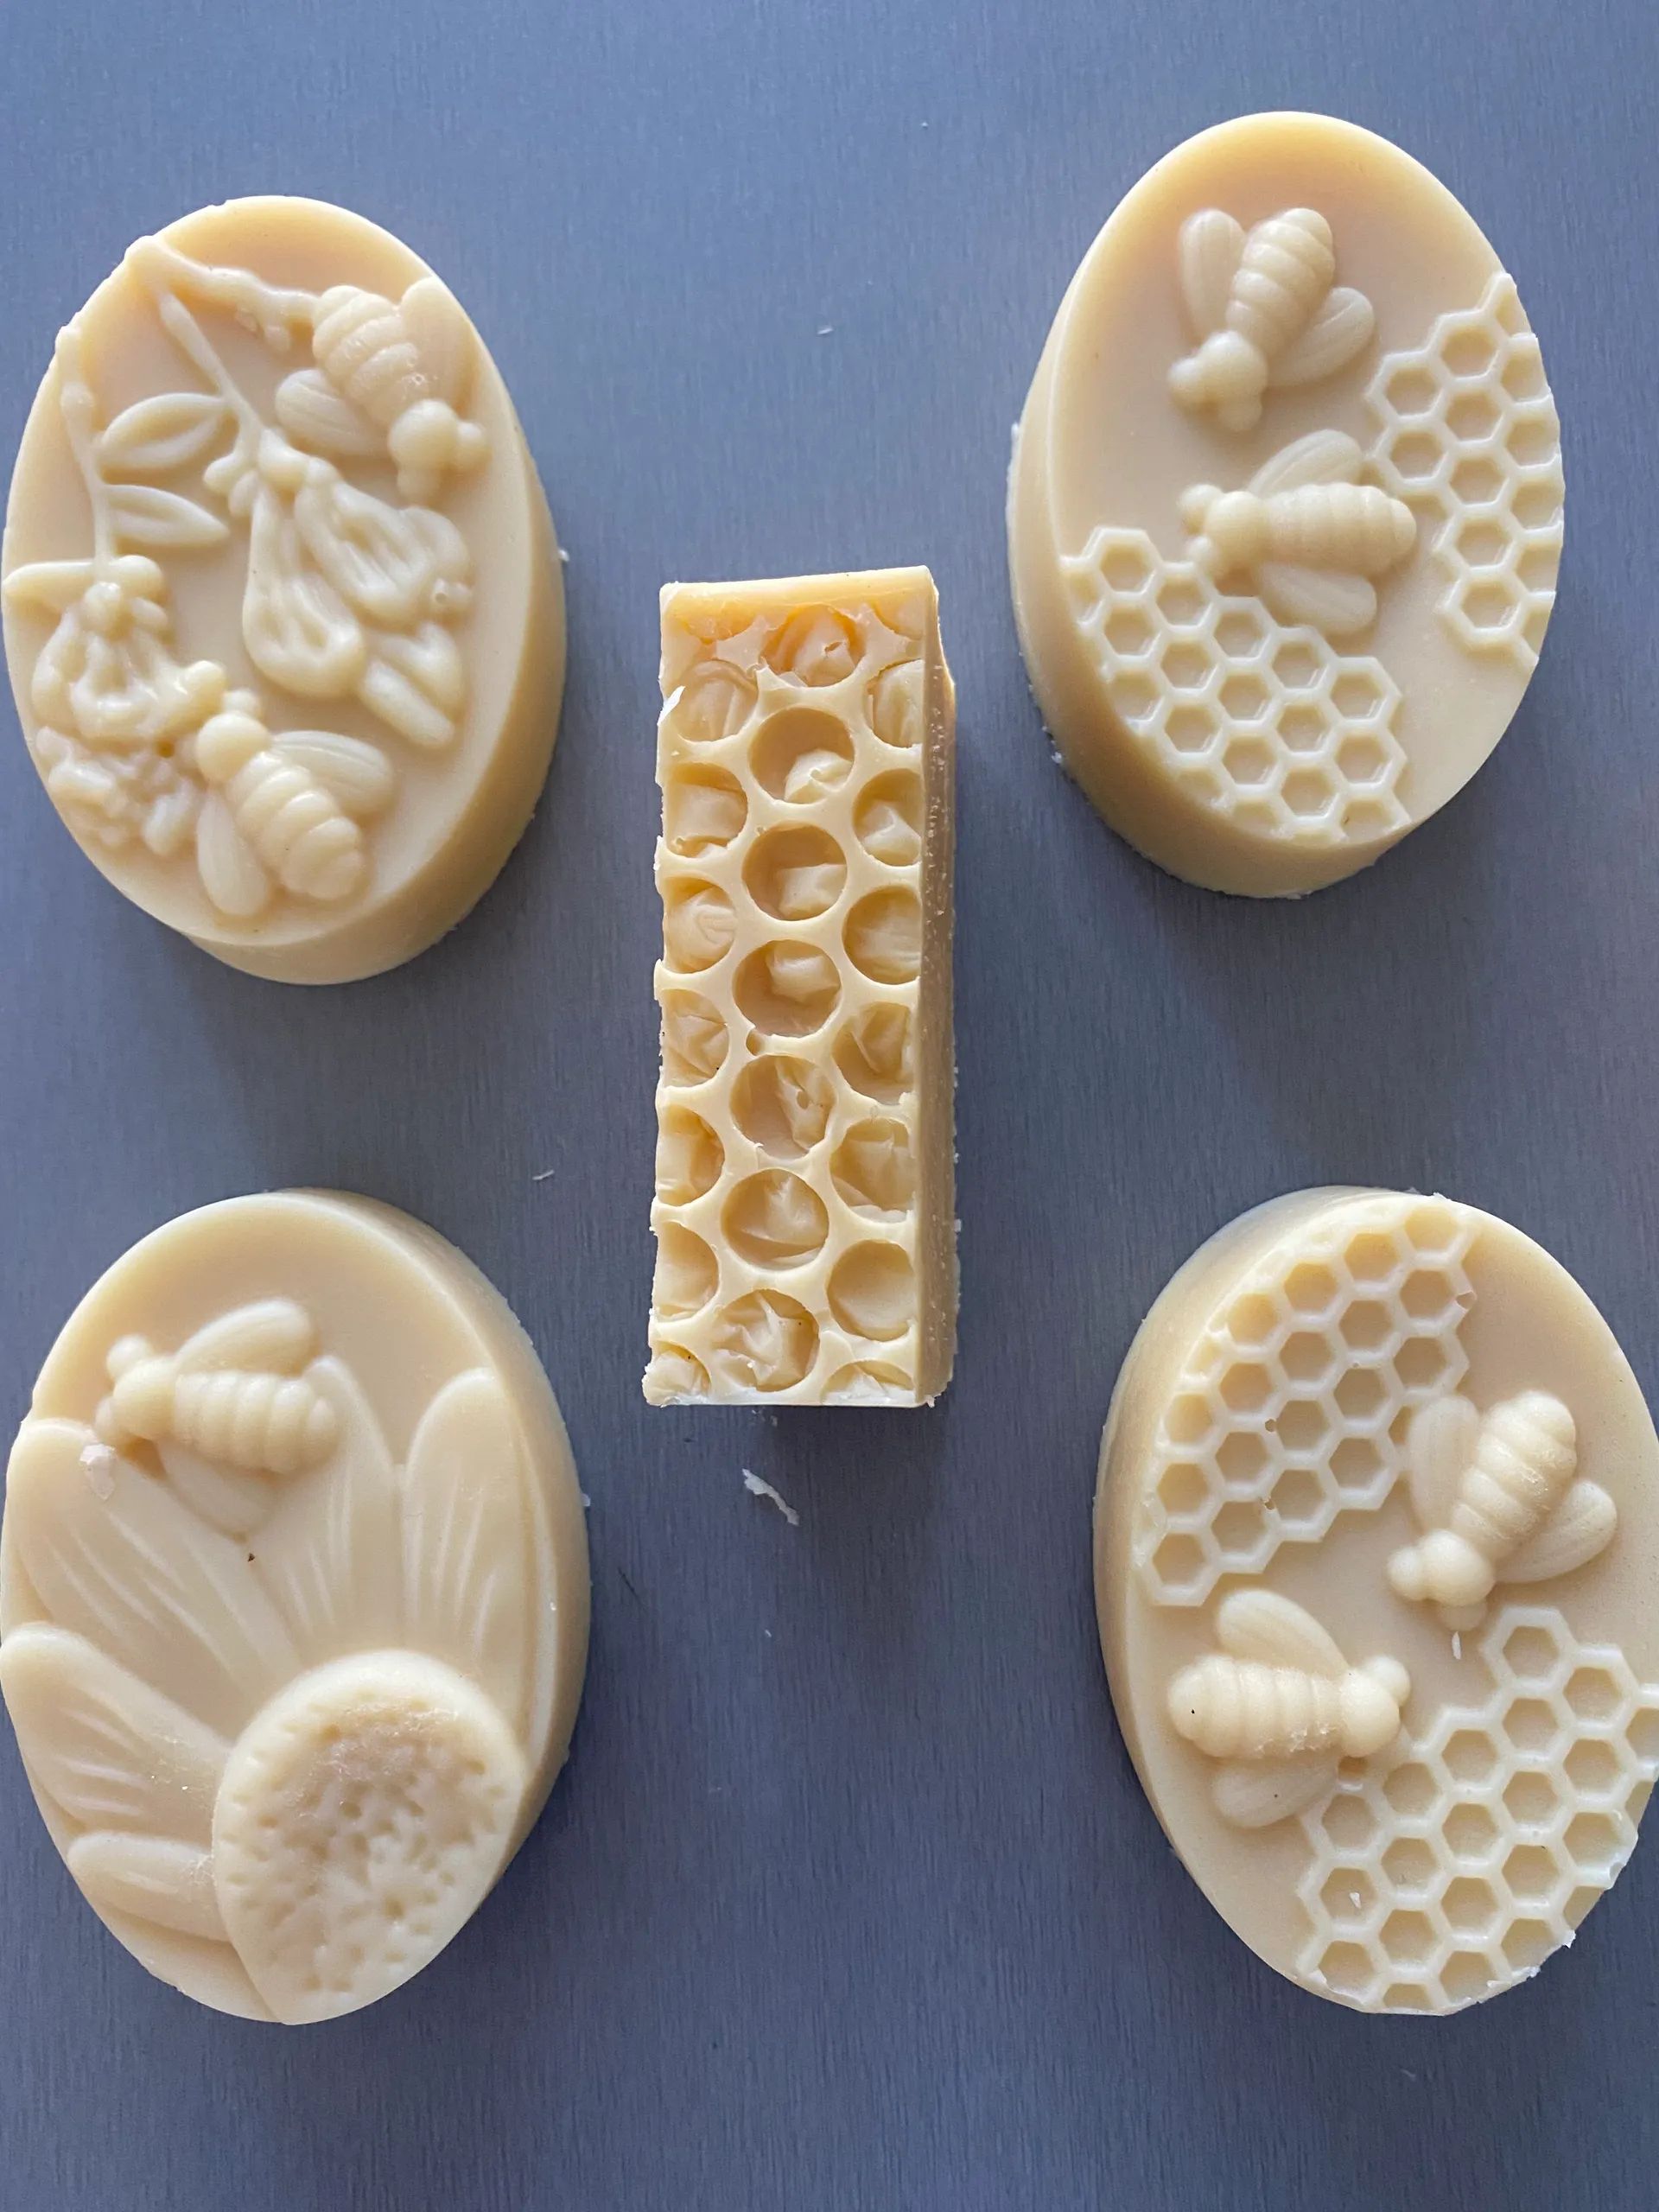 Première expérience de fabrication de savon au miel